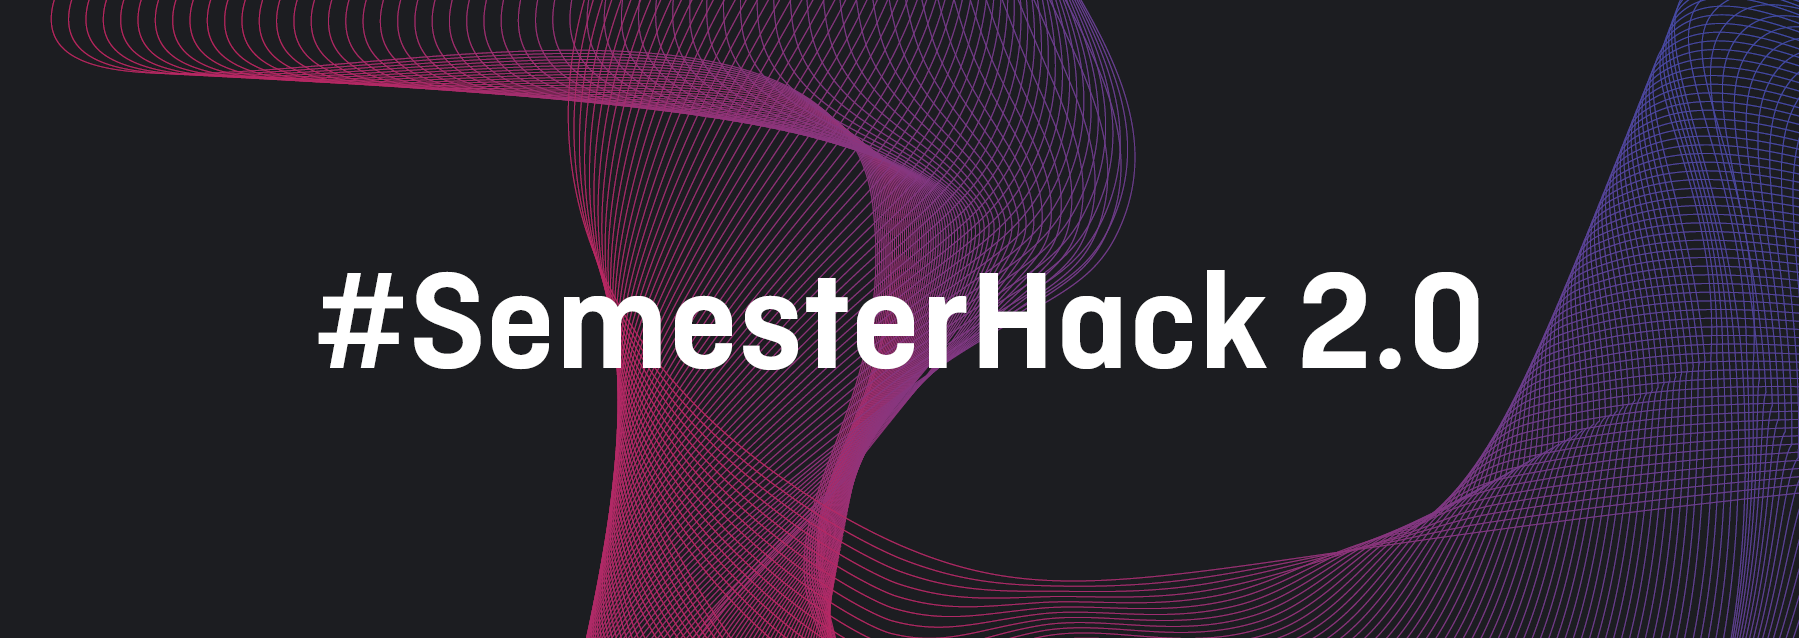 Coverbild zum Semesterhack 2.0, Hackathon am 12. und 13. November 2020